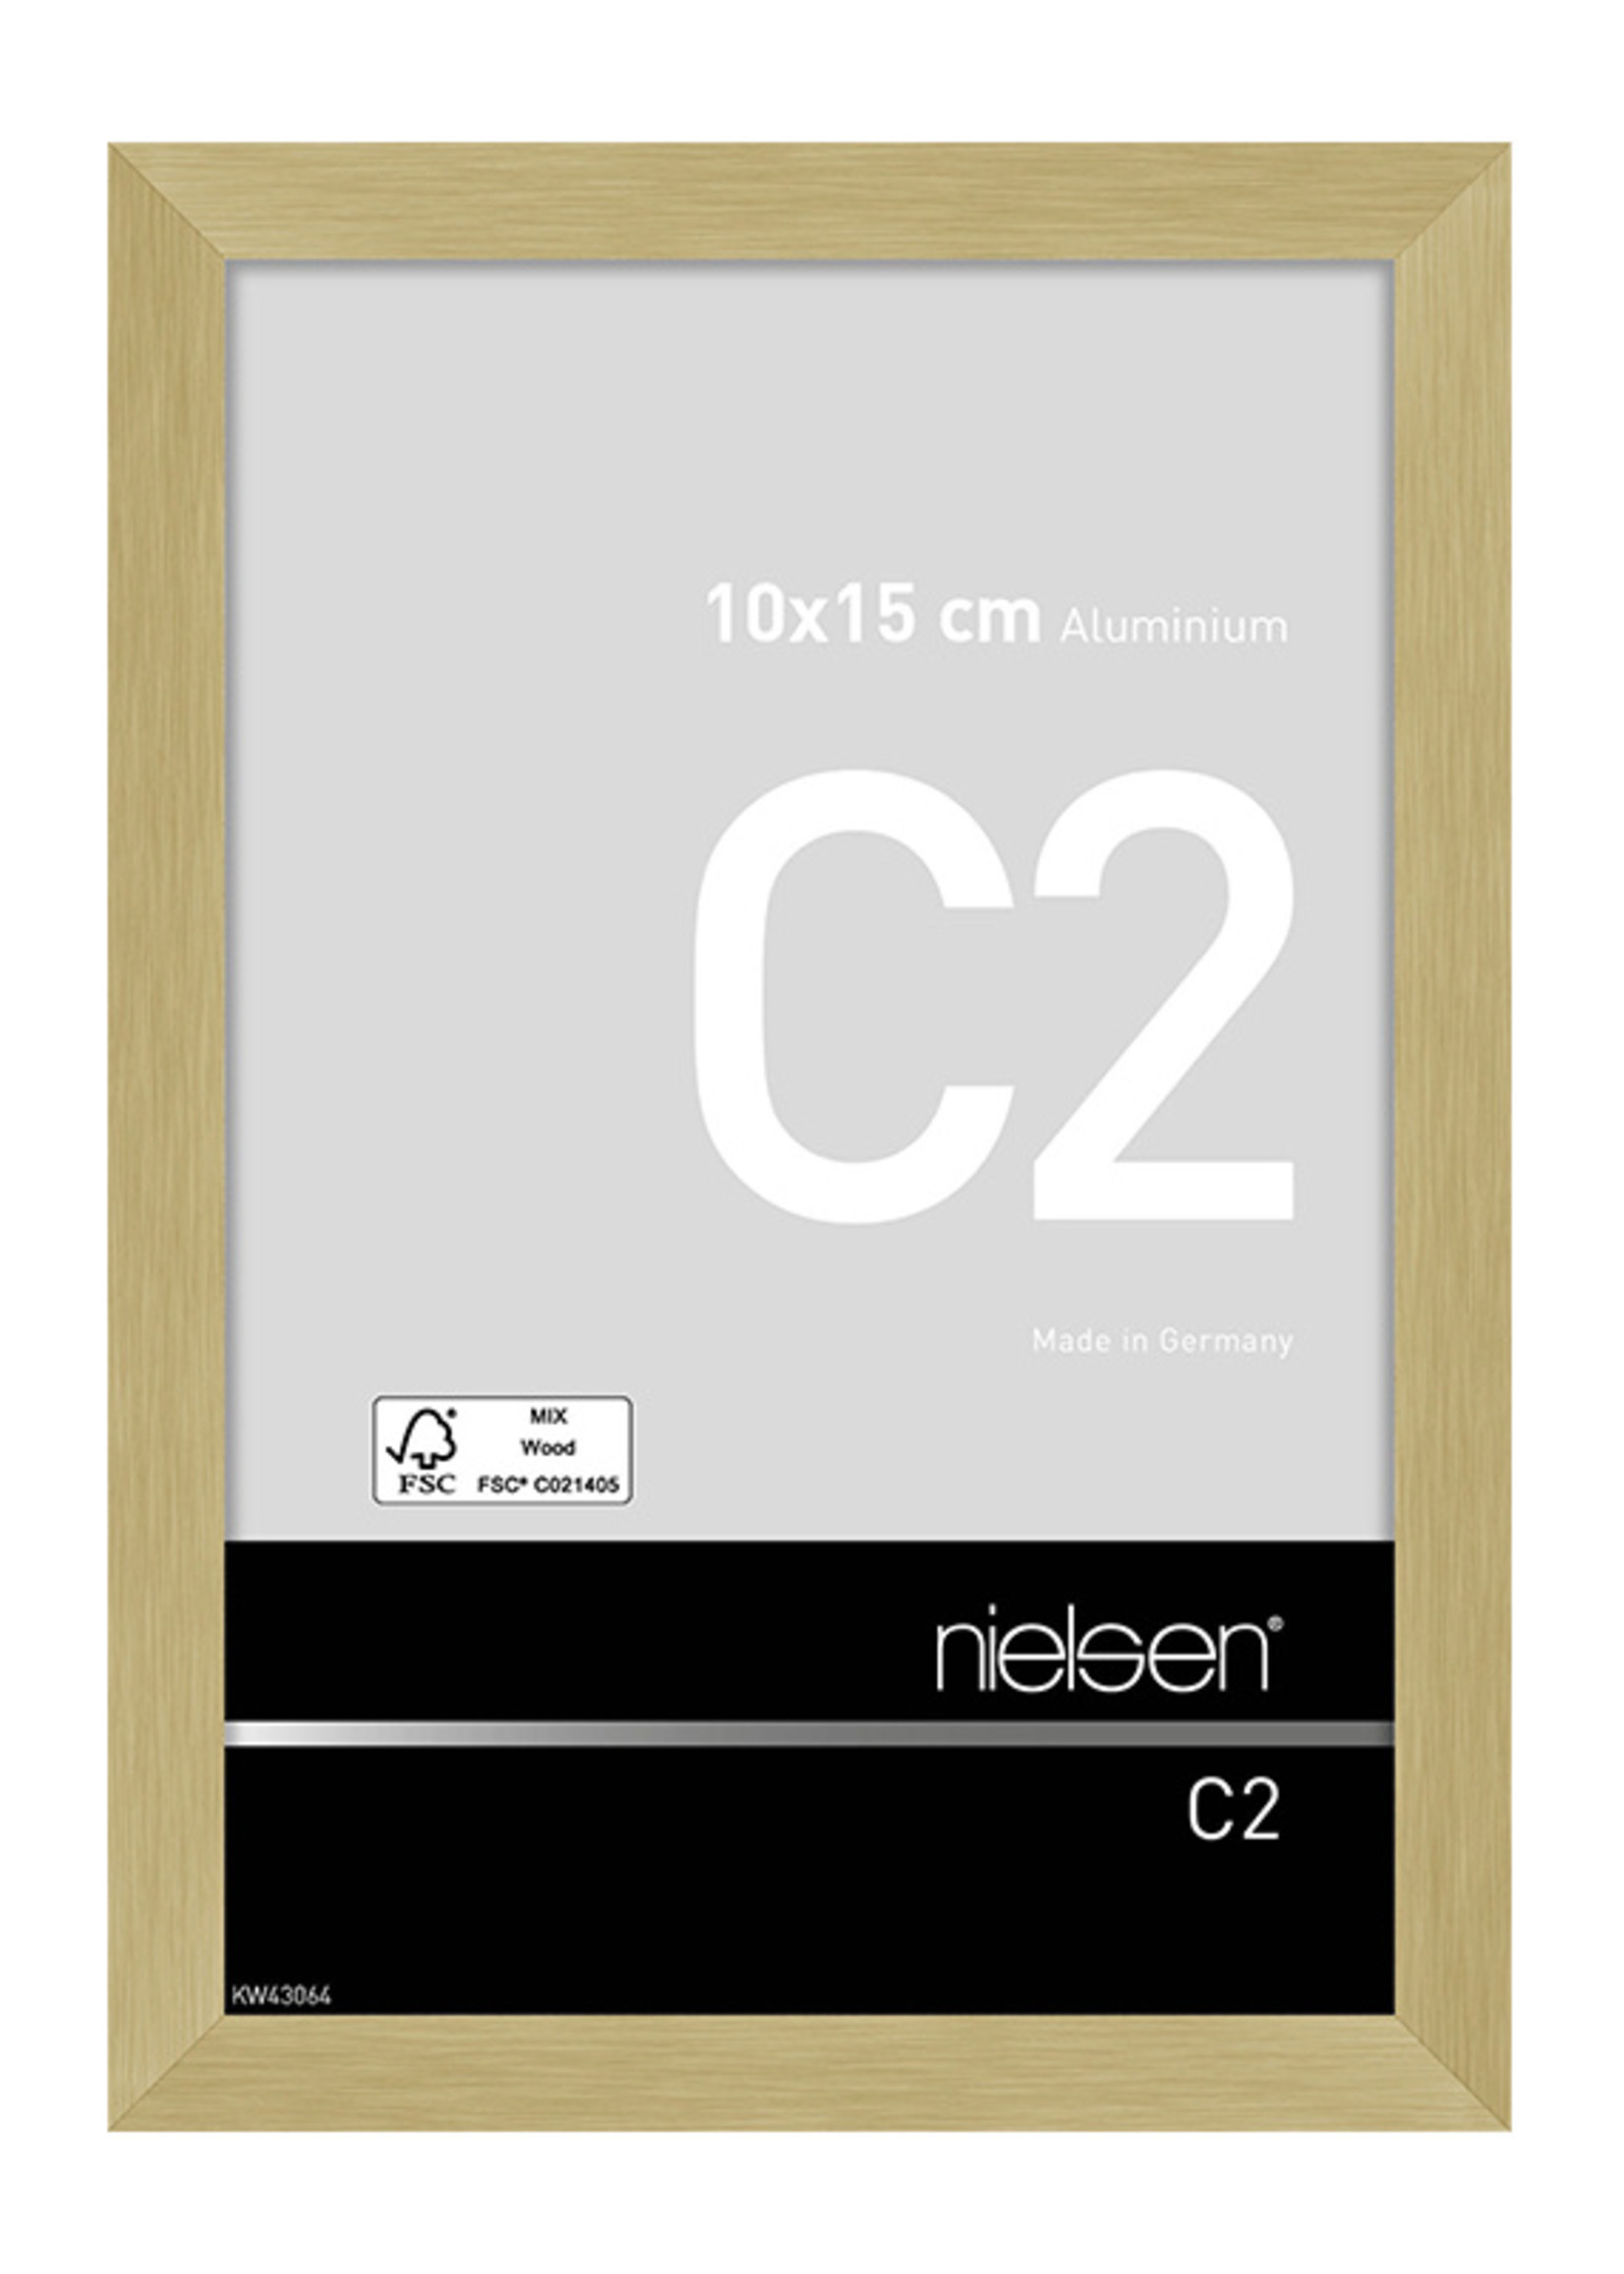 Nielsen C2 Mat Gold